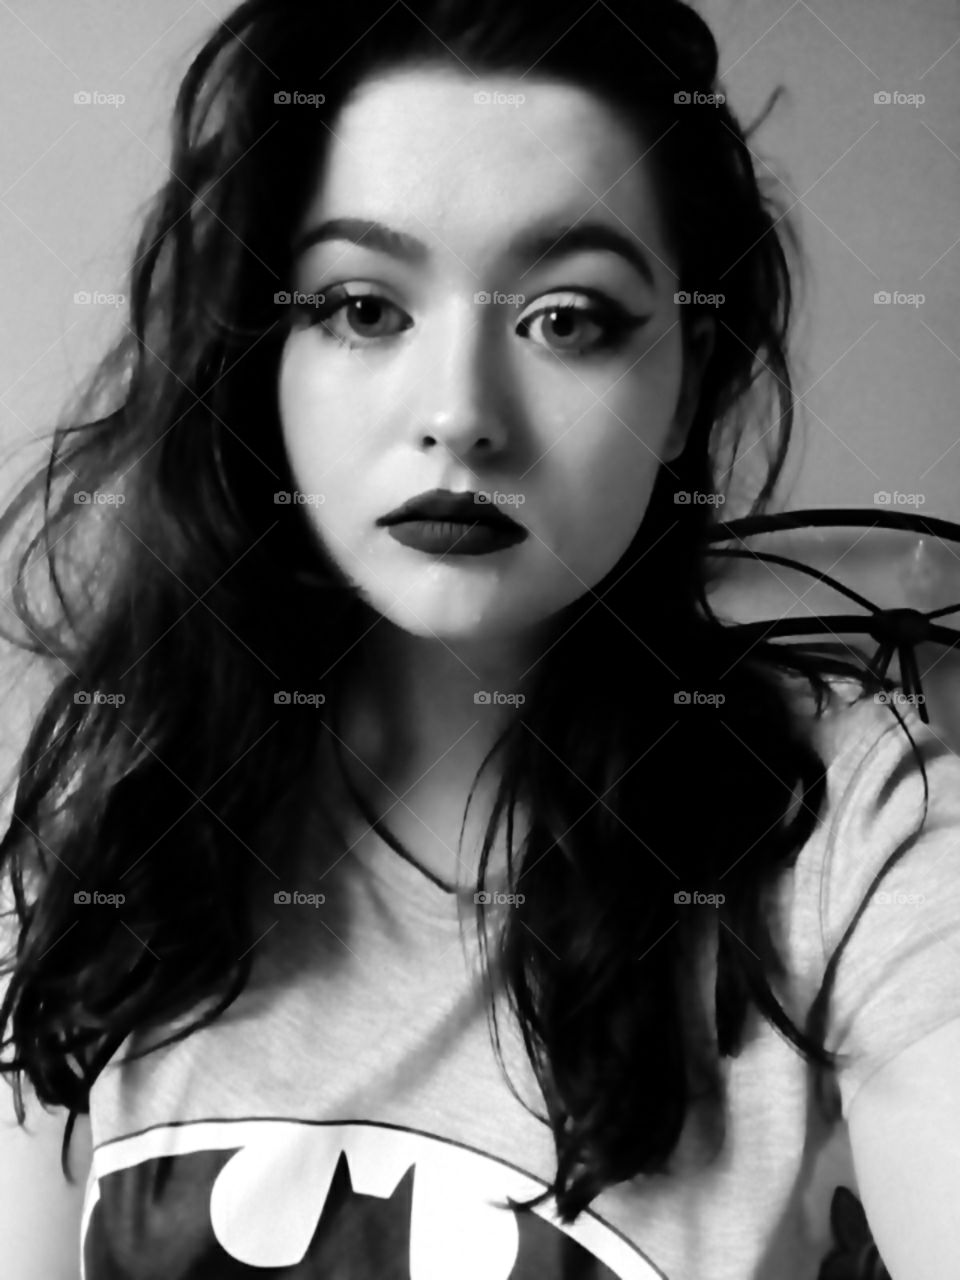 Self-Portrait in Black and White